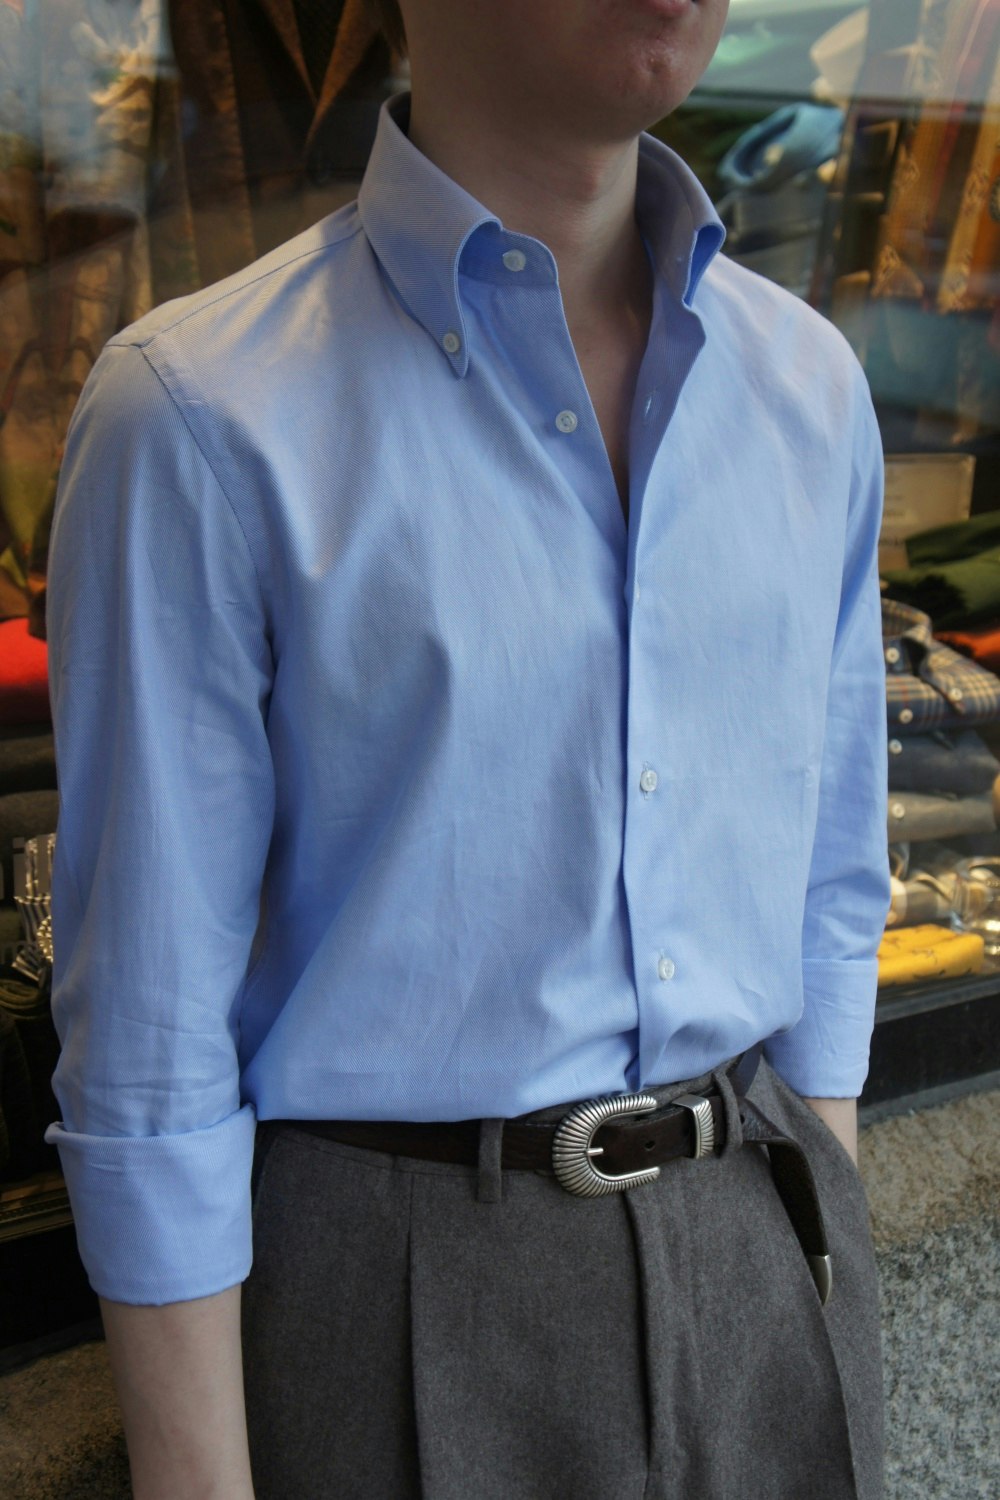 Enfärgad Royale Twillskjorta - Button Down - Ljusblå